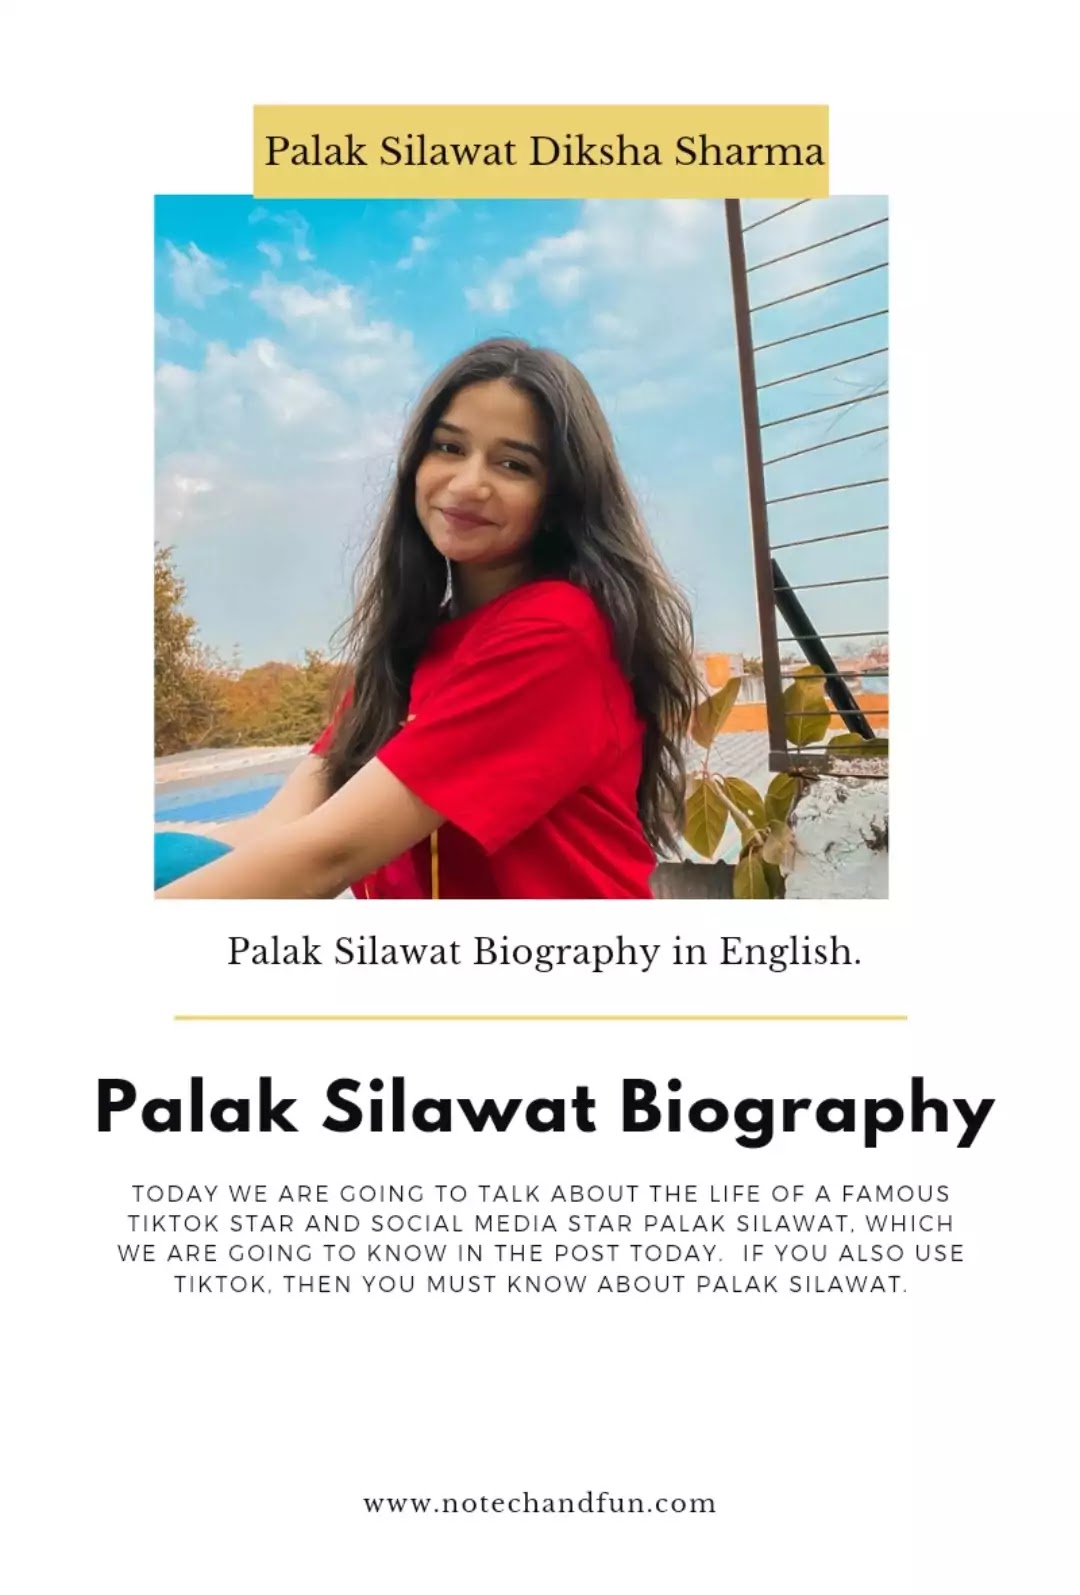 Palak Silawat Biography